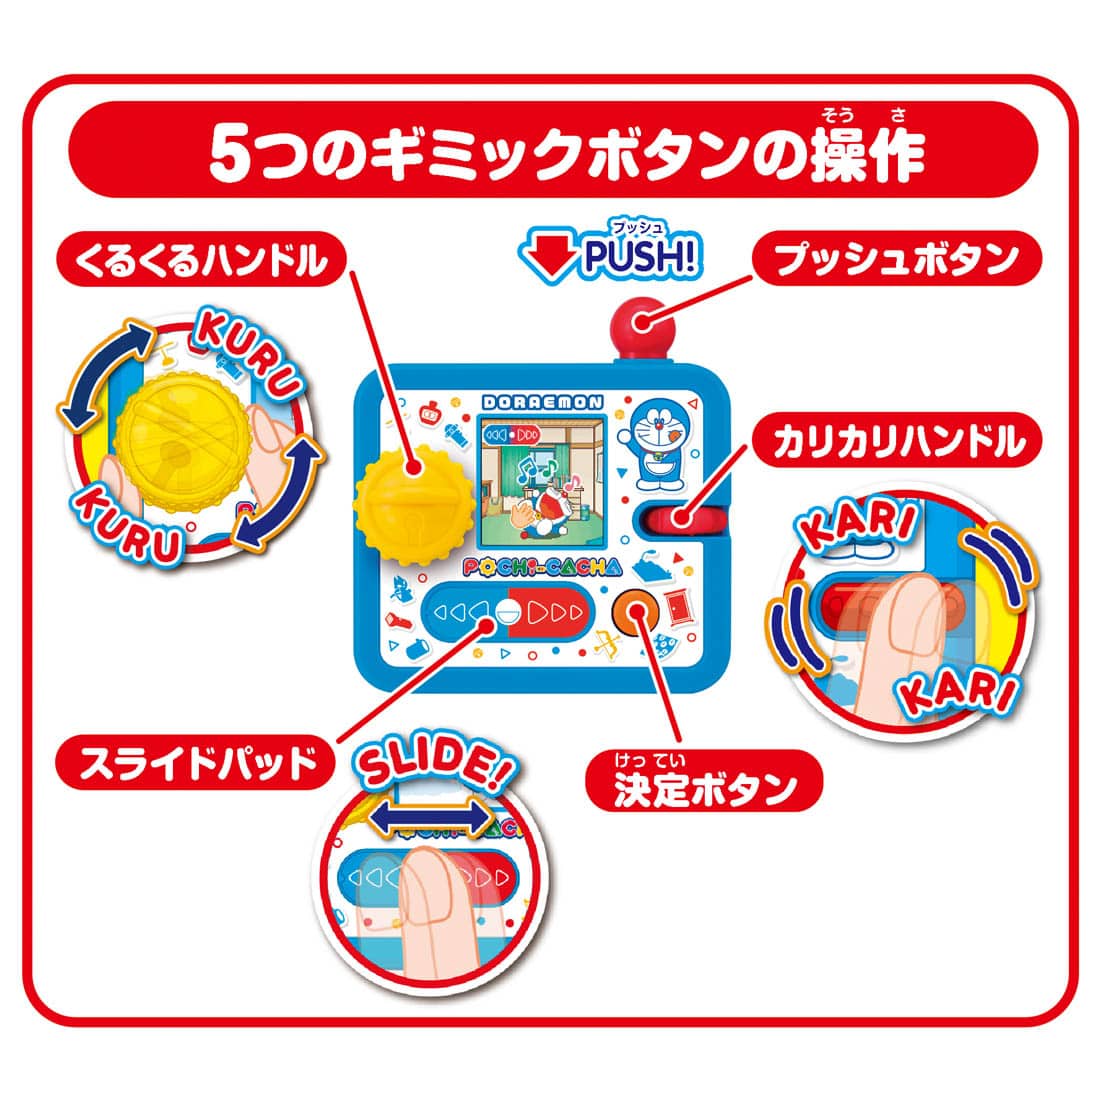 [NEW] POCHI-CACHA - Doraemon Takara Tomy Japan [ OCT 29